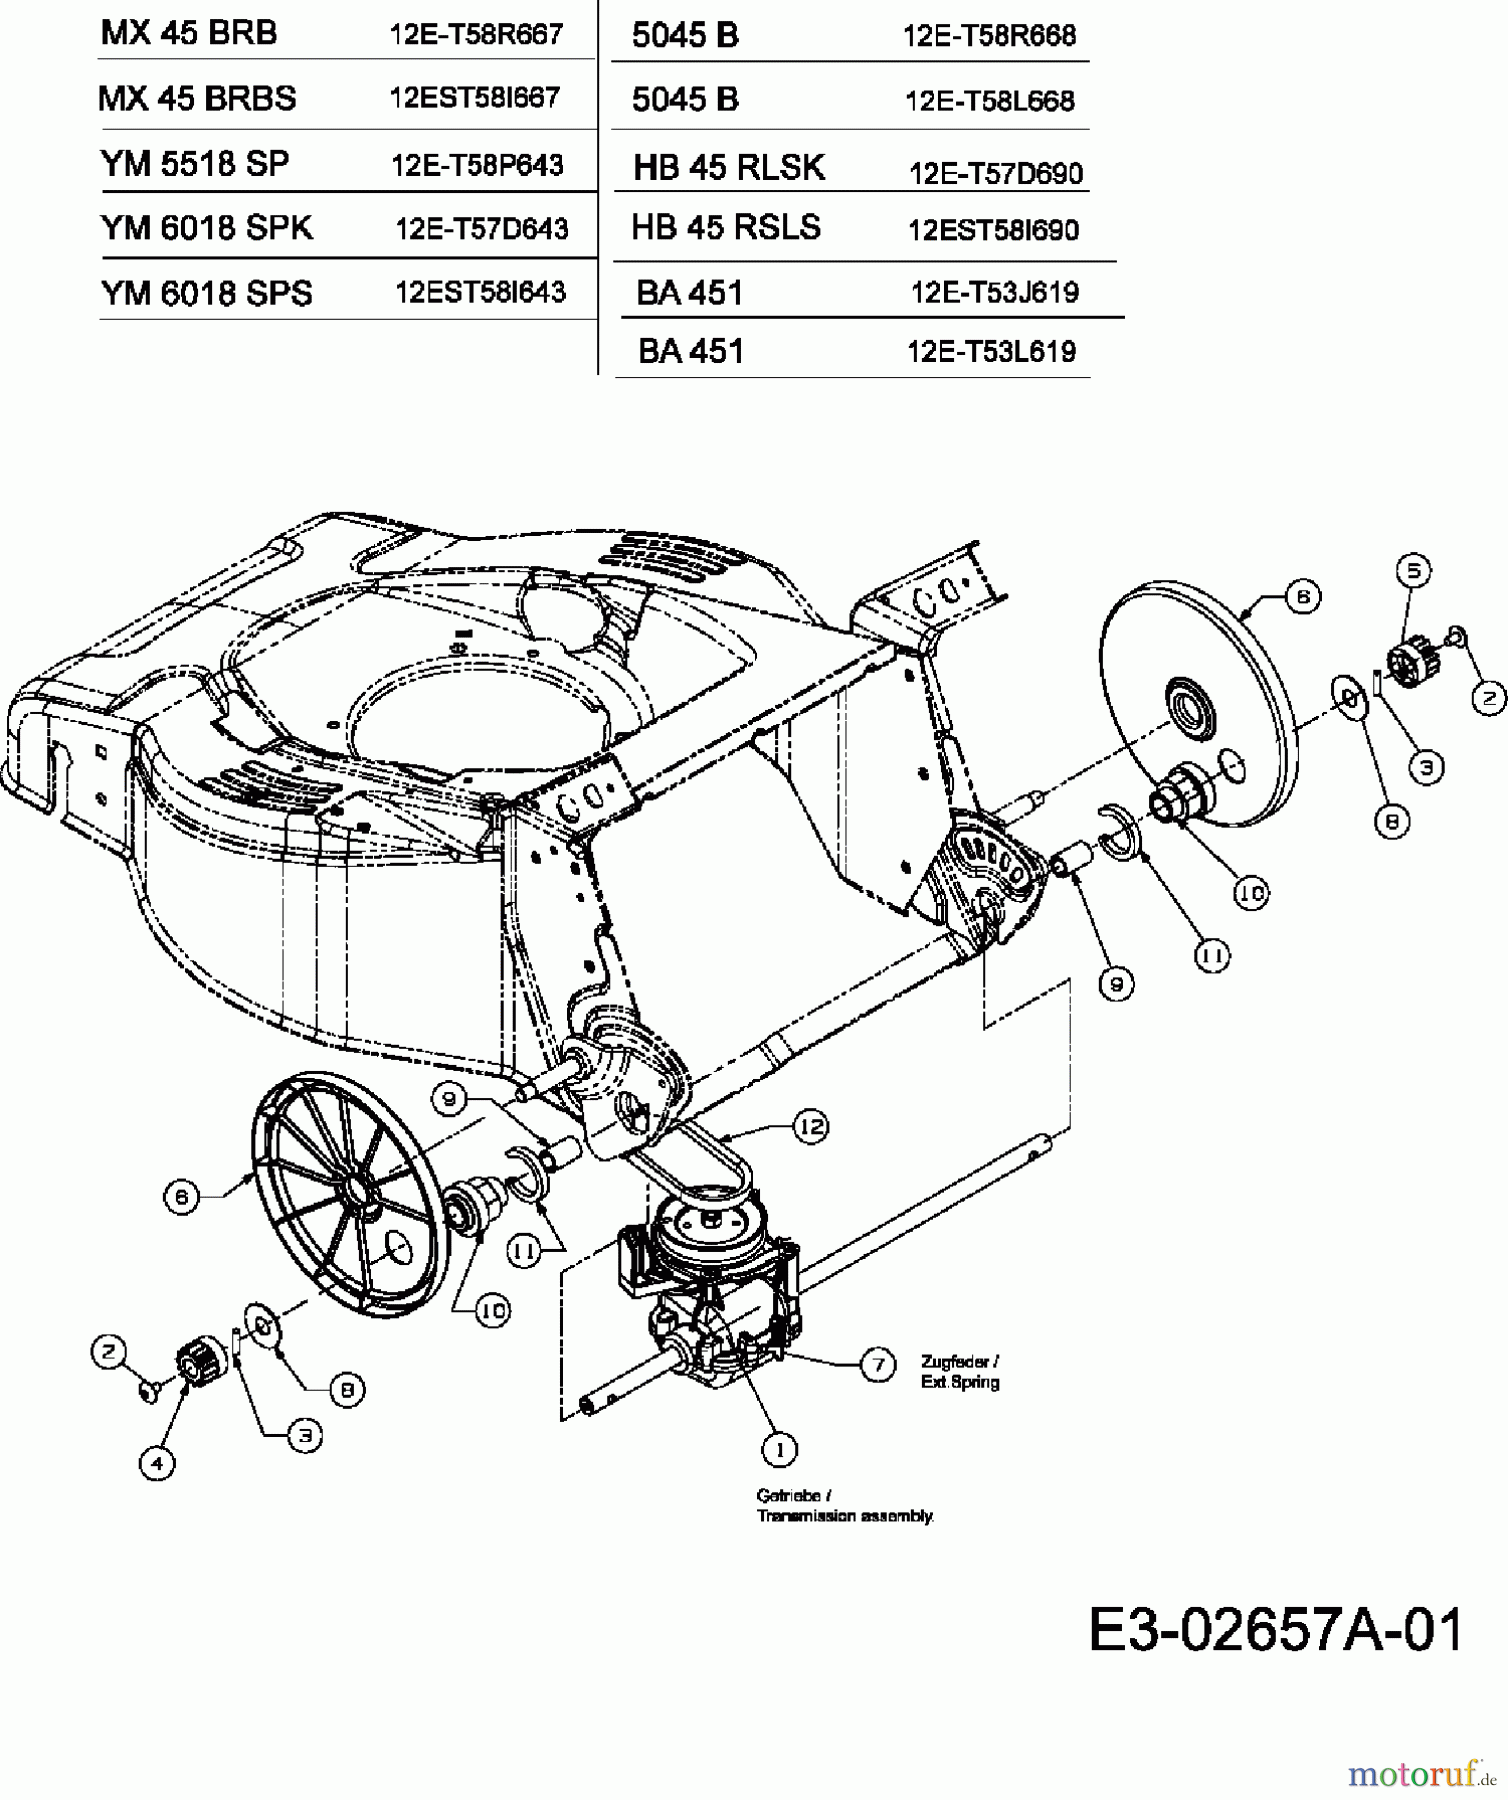  Gutbrod Petrol mower self propelled HB 45 RLSK 12E-T57D690  (2006) Gearbox